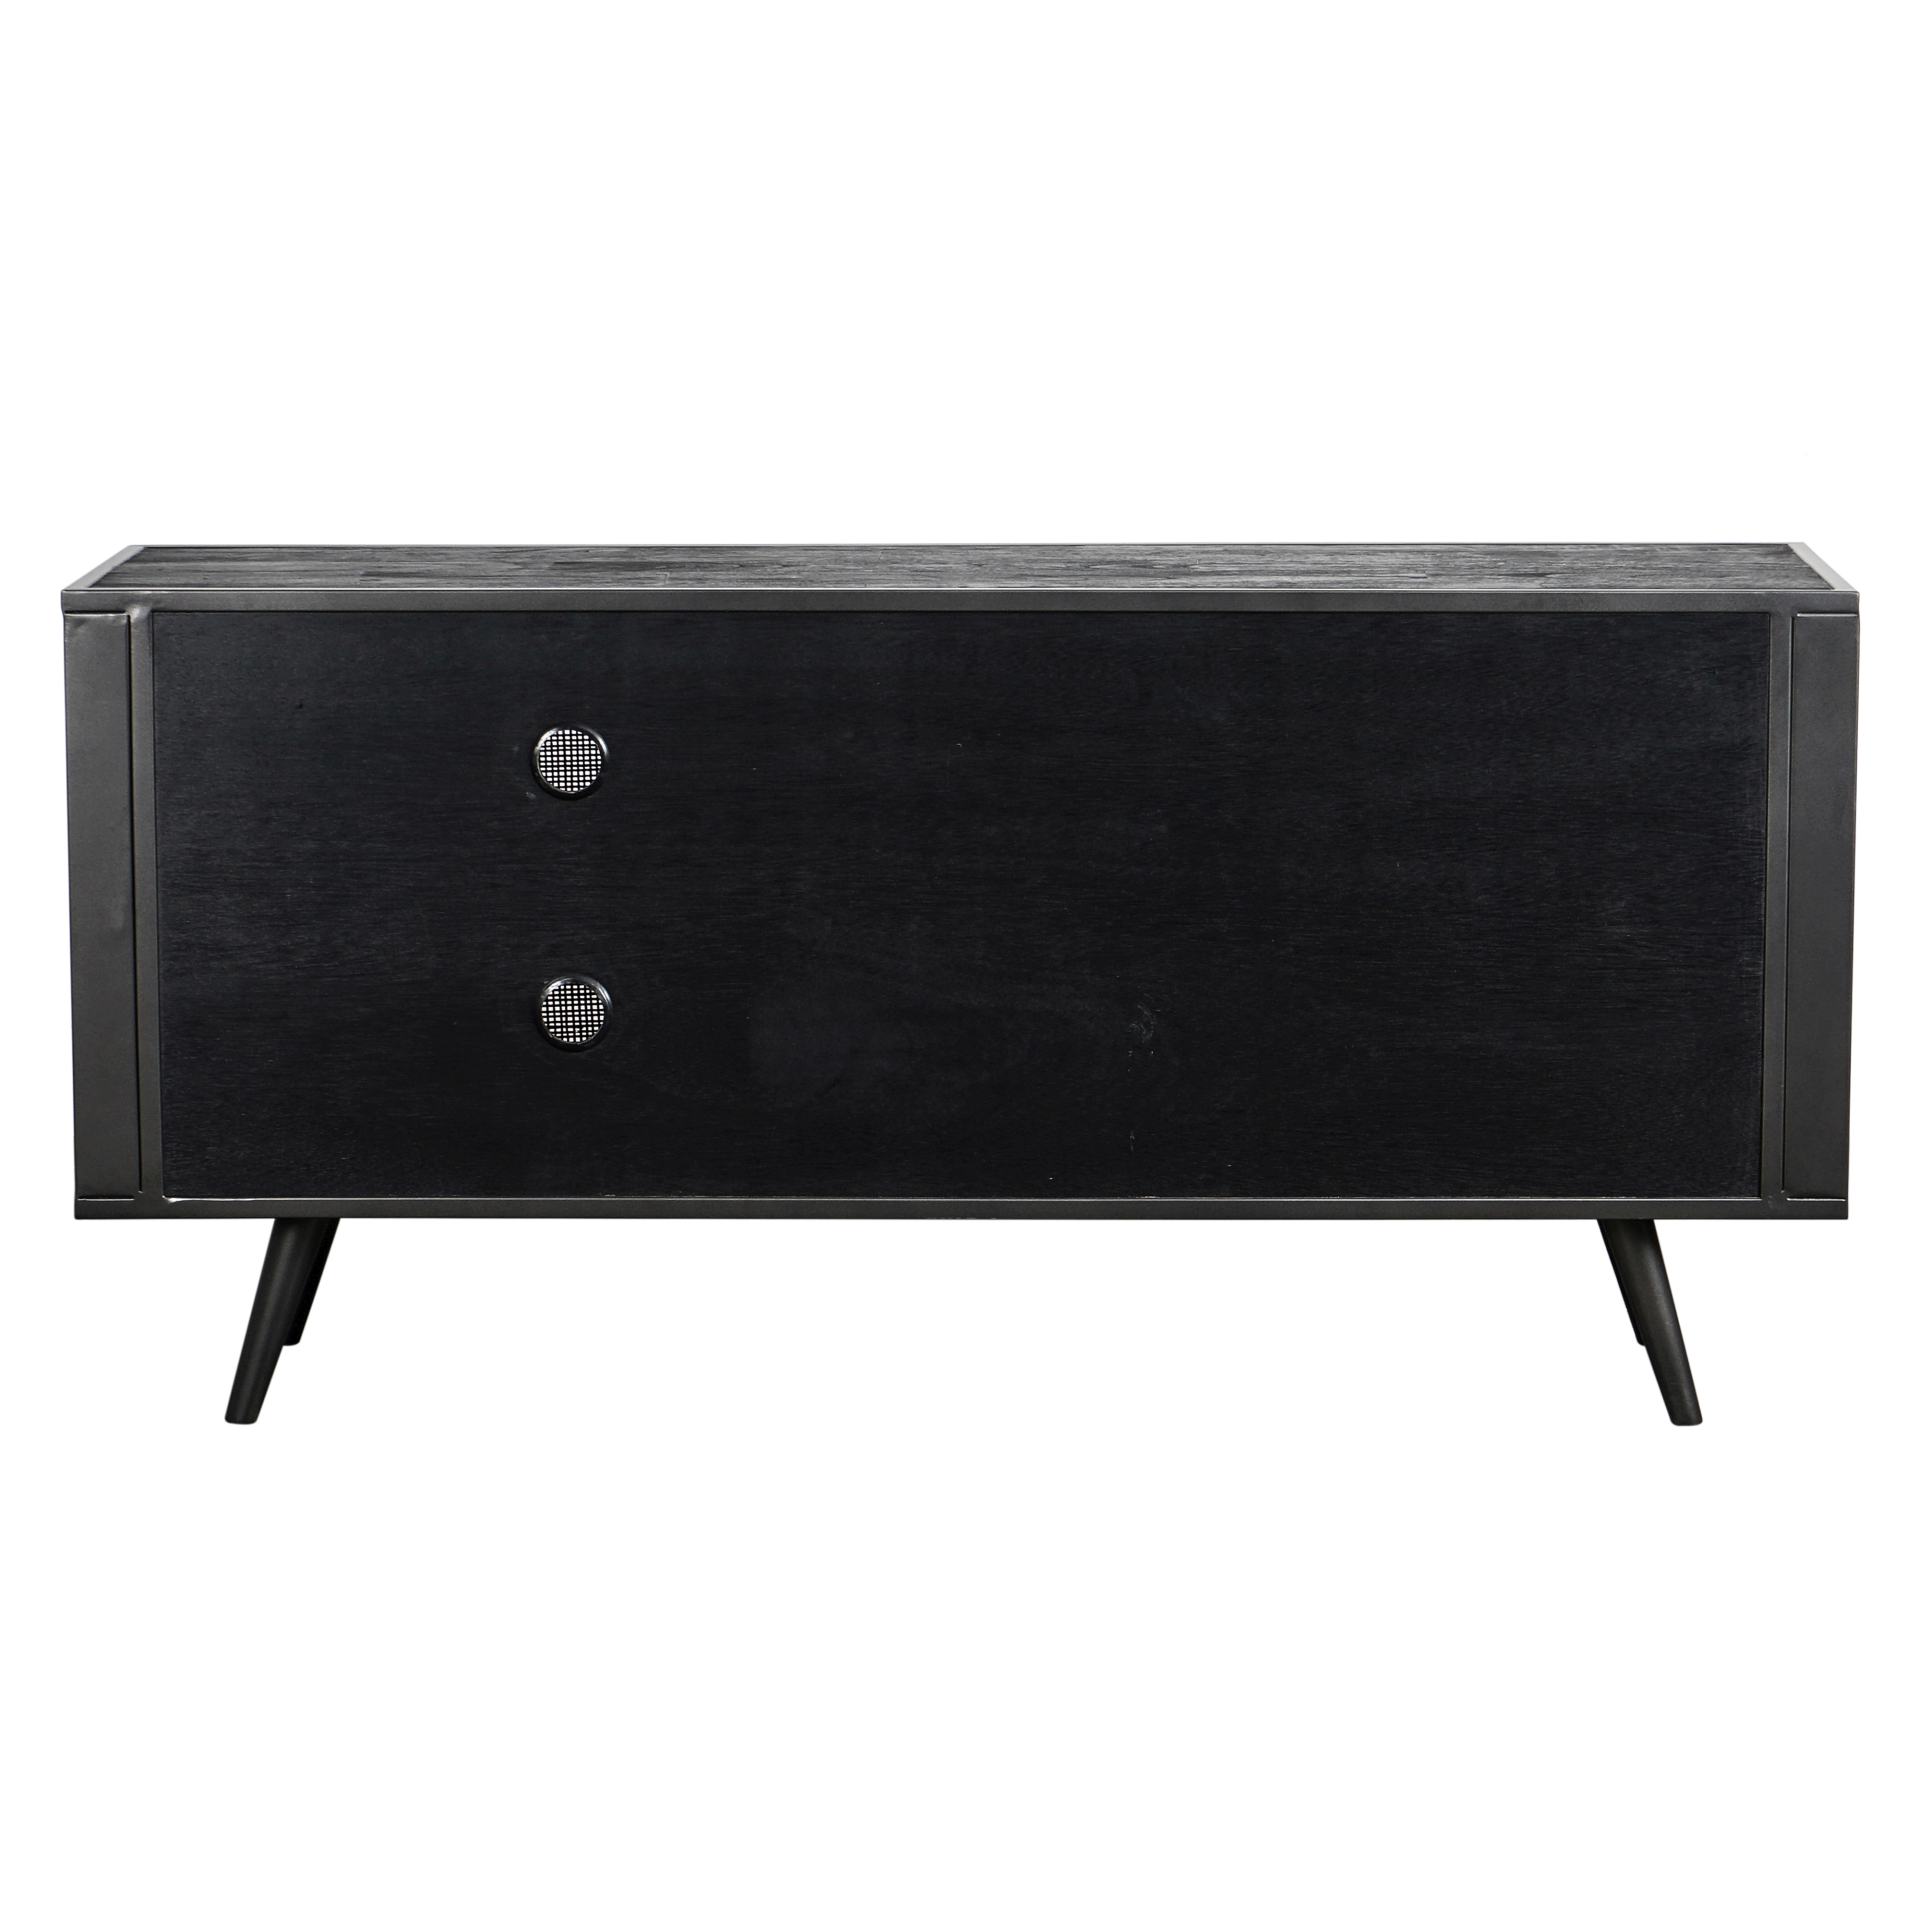 Das TV-Board Nordic Mindi Rattan überzeugt mit seinem Industriellen Design. Gefertigt wurde es aus Rattan und Mindi Holz, welches einen schwarzen Farbton besitzt. Das Gestell ist aus Metall und hat eine schwarze Farbe. Das TV-Board verfügt über drei Türen